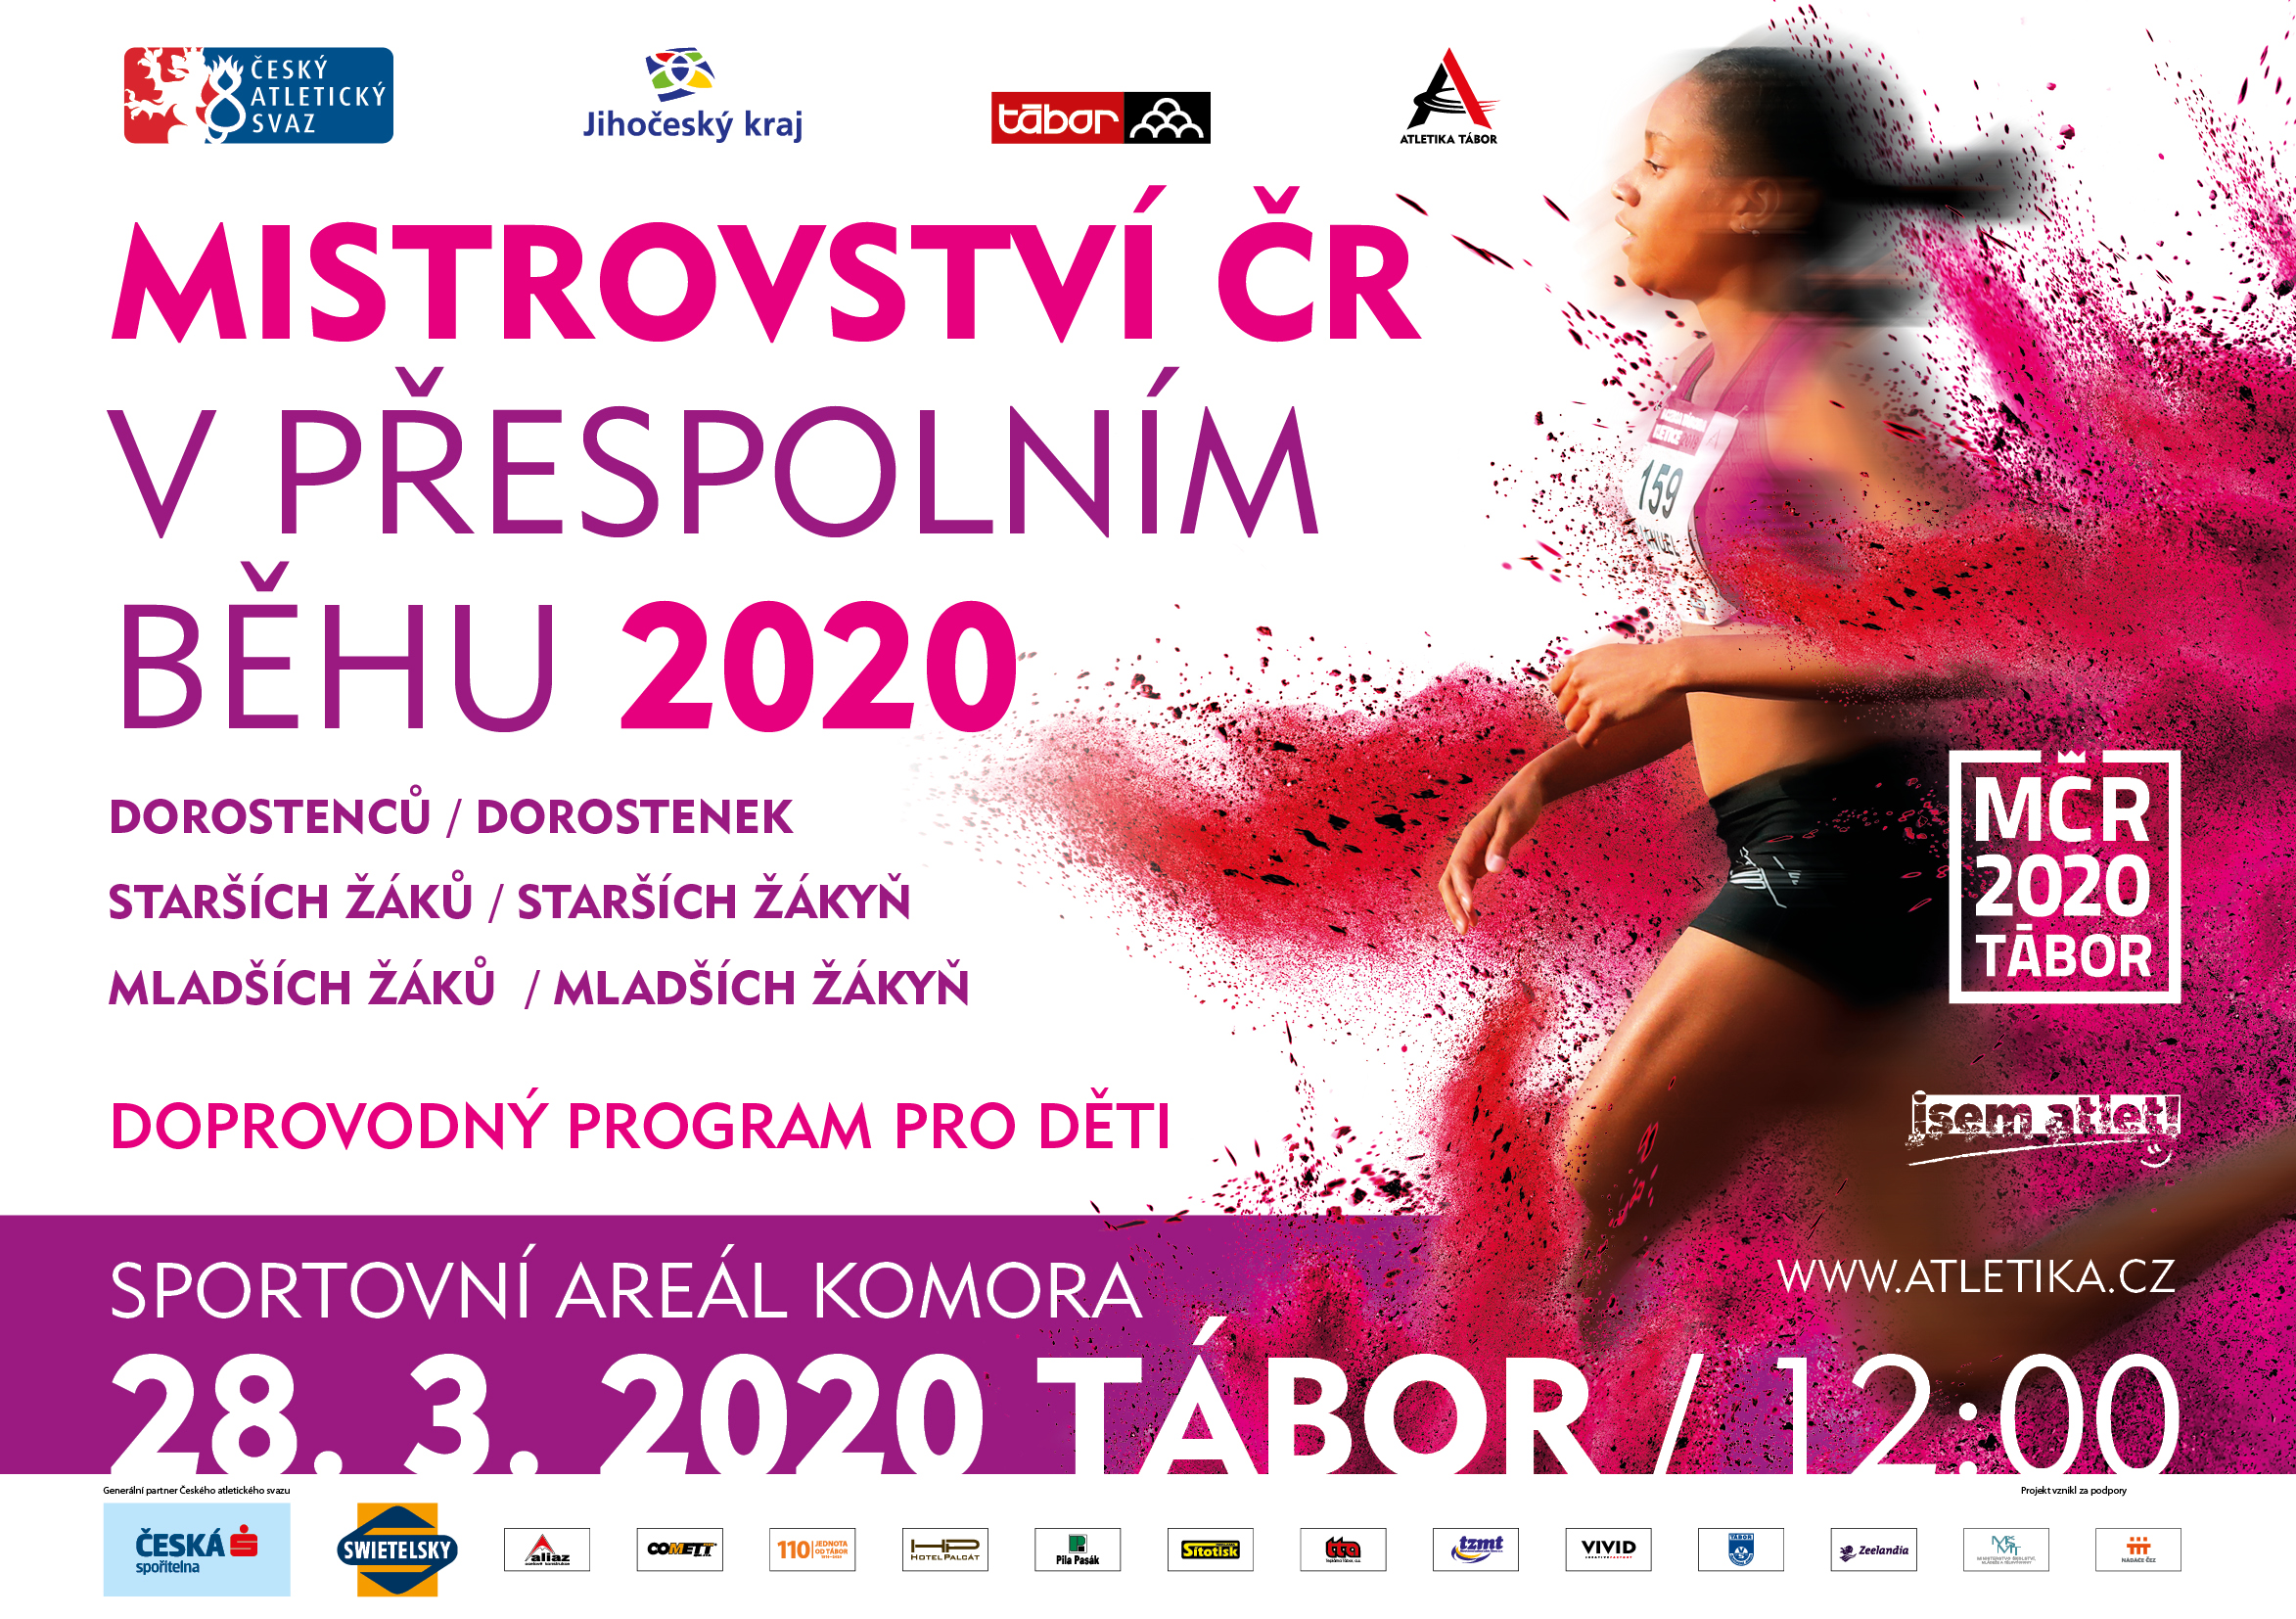 Mistrovství ČR v přespolním běhu mládeže 2020